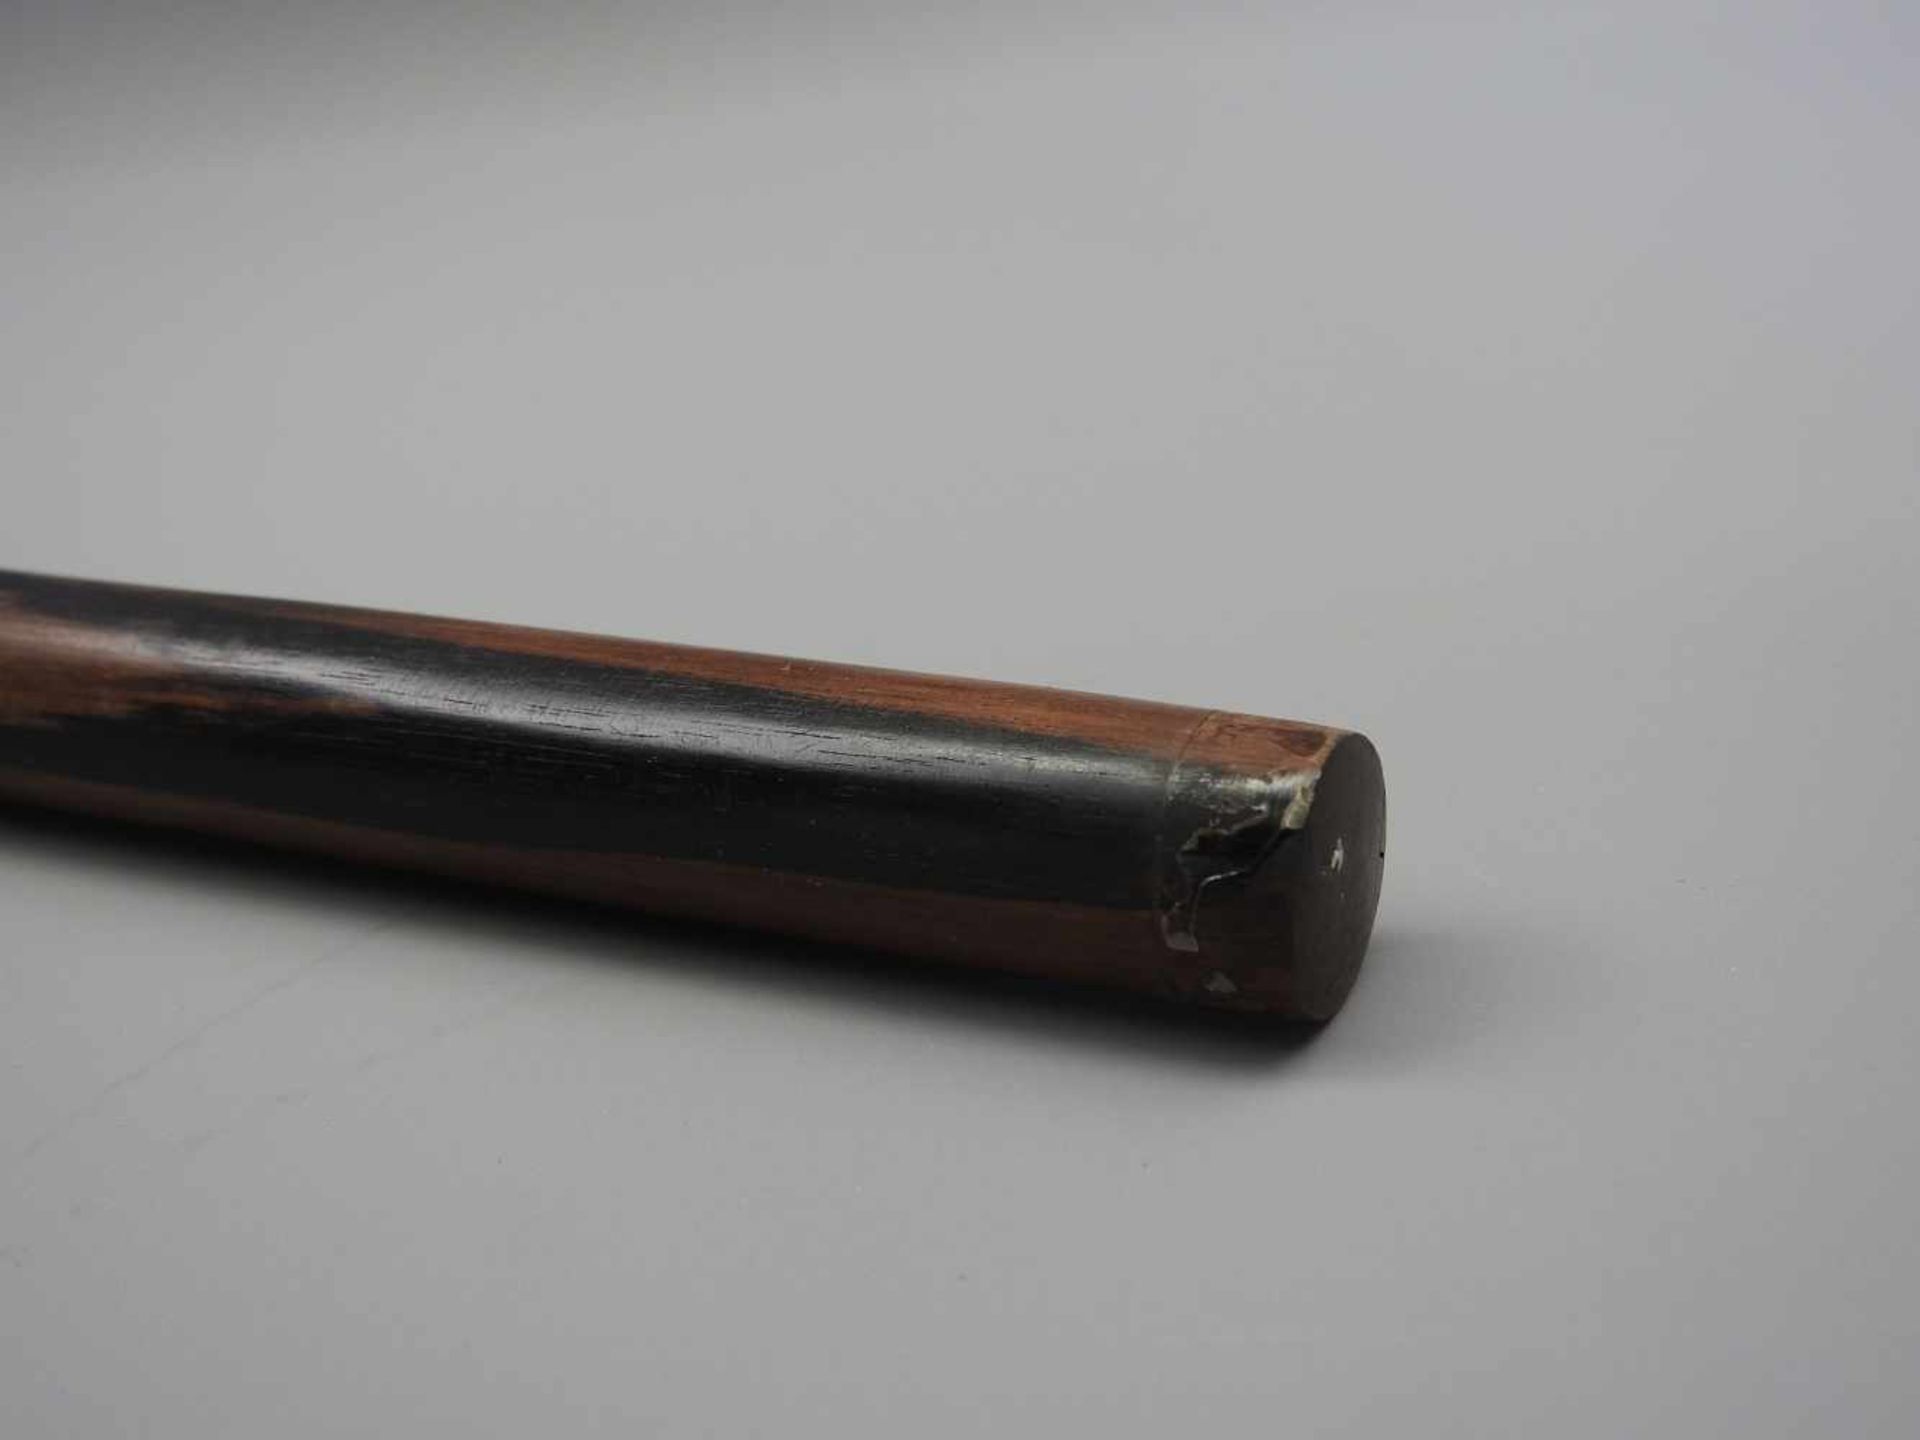 Gehstock mit Schädel-GriffHolz/Hirschhorn. Gehstock aus Holz mit eingesetztem Griff aus Hirschhorn - Bild 3 aus 4